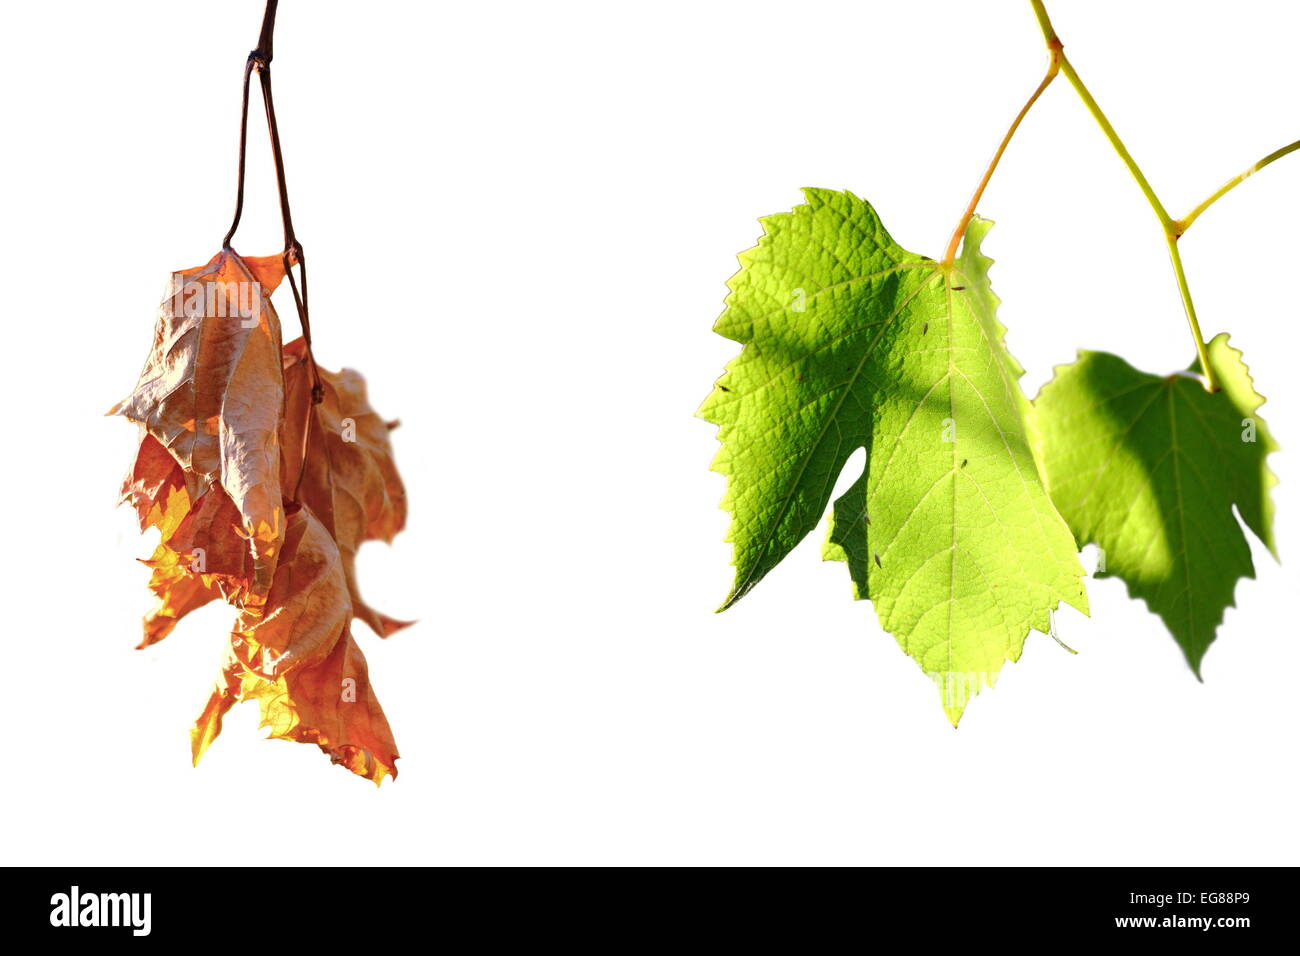 La vita e la morte concetto, verde e sbiadita enologiche di leafs isolato su bianco, contrasto Foto Stock